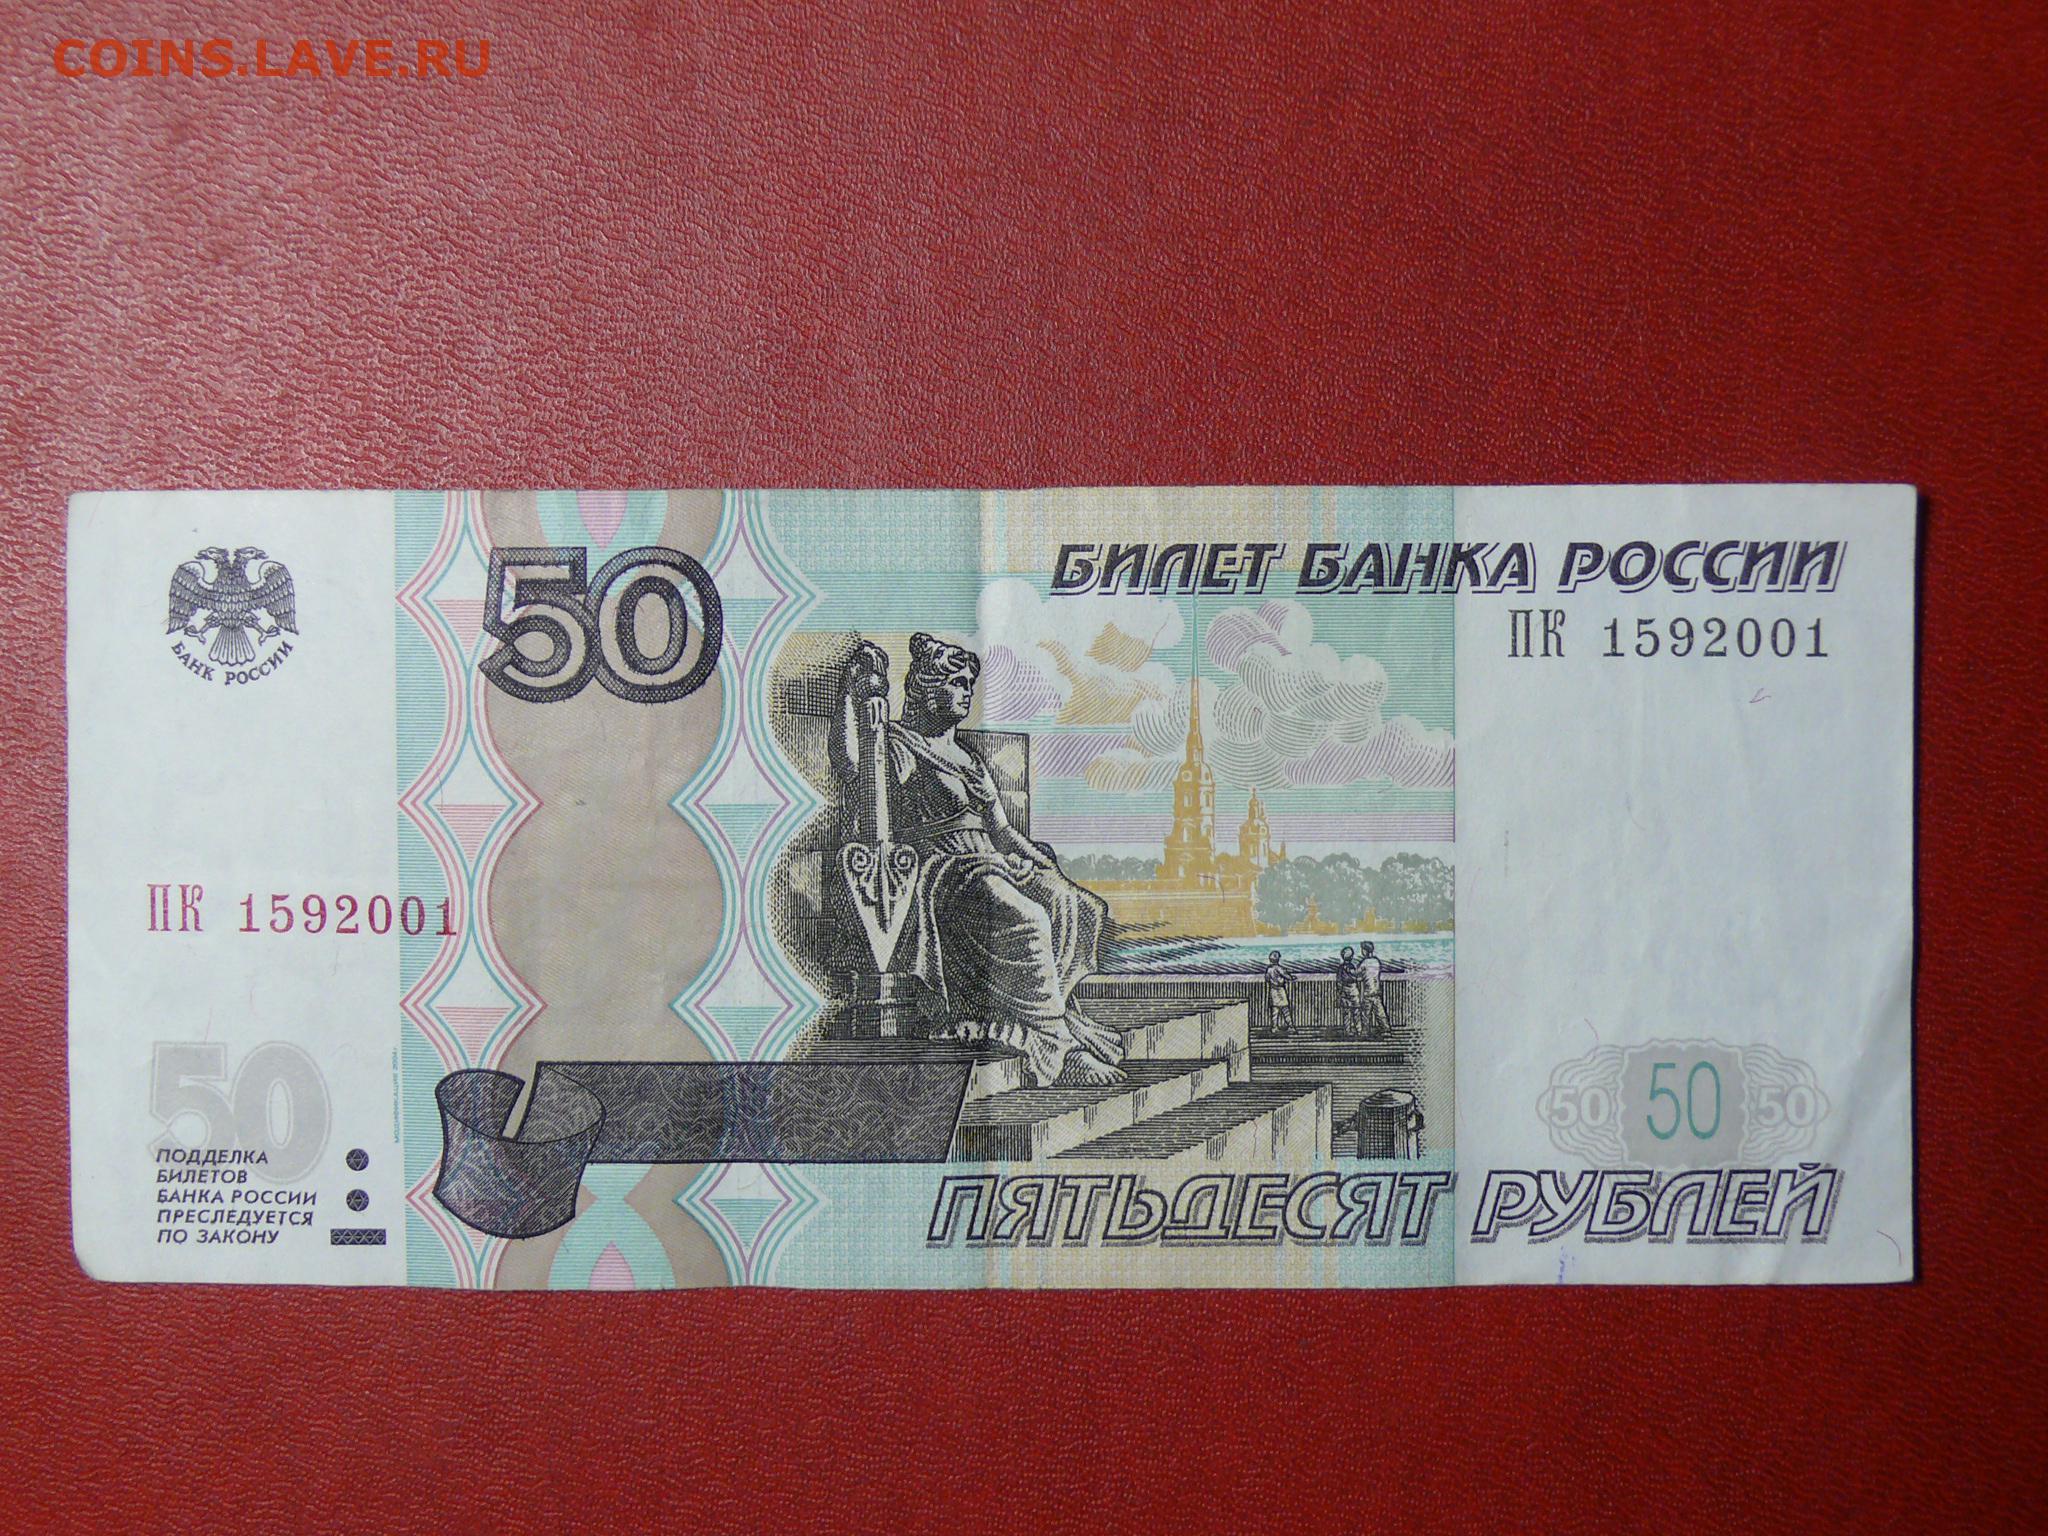 50 рублей 500 рублей. Купюра 50 рублей. 50000 Рублей 1995 года. Банкноты модификации 50 рублей. 50 Рублей бумажные 1997.